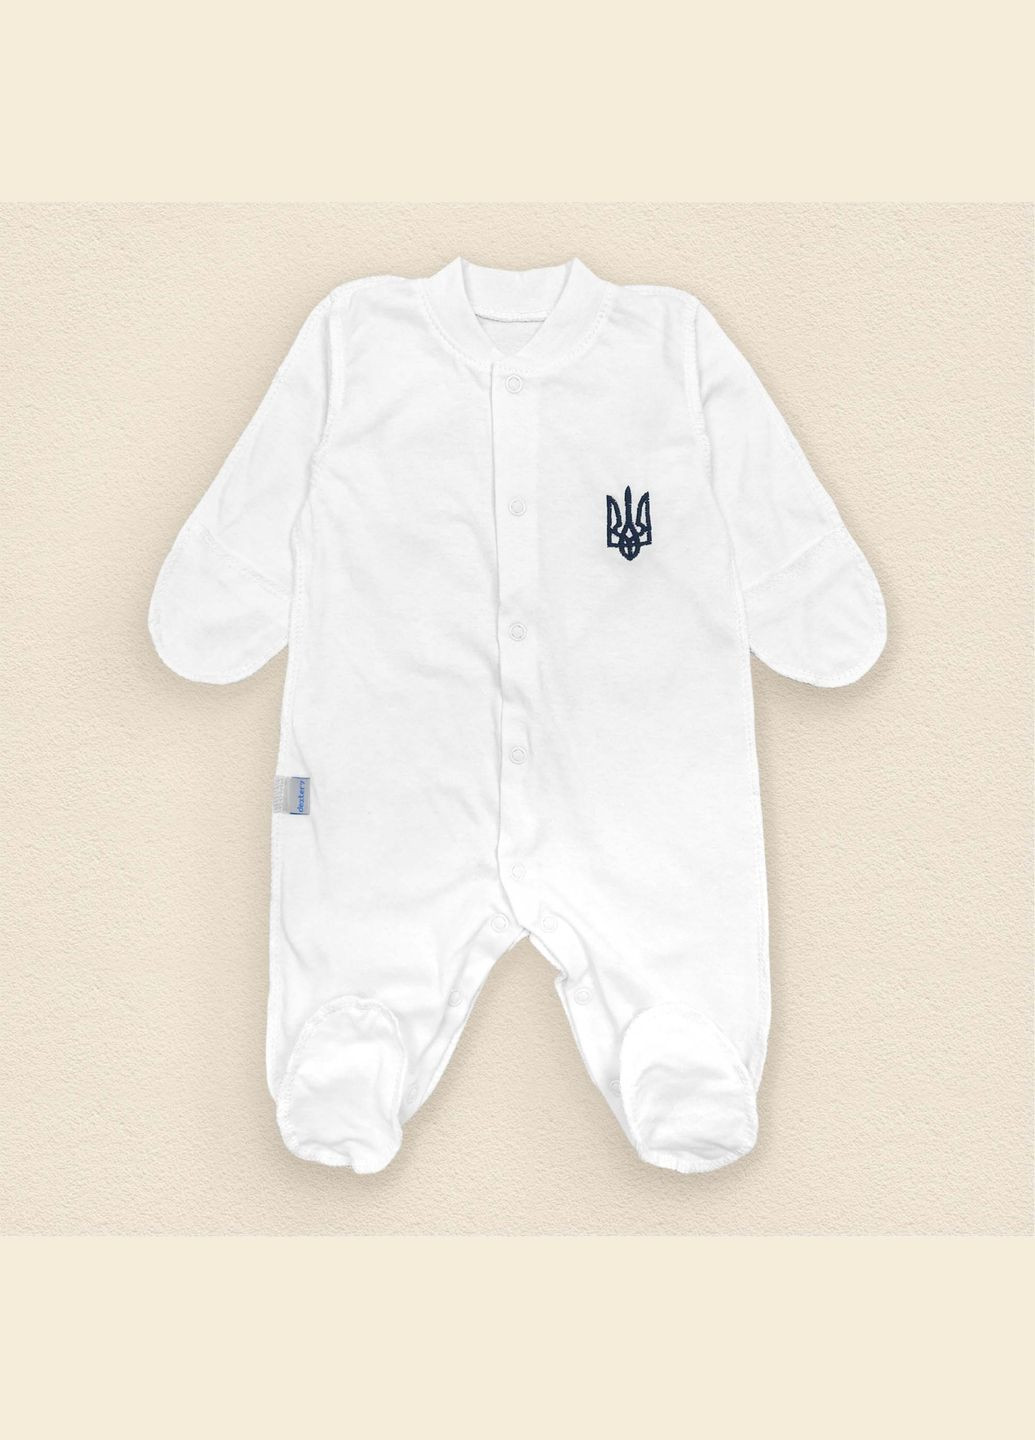 Человечек Dexter`s для новорожденного с украинской символикой белый dexter's (290416686)